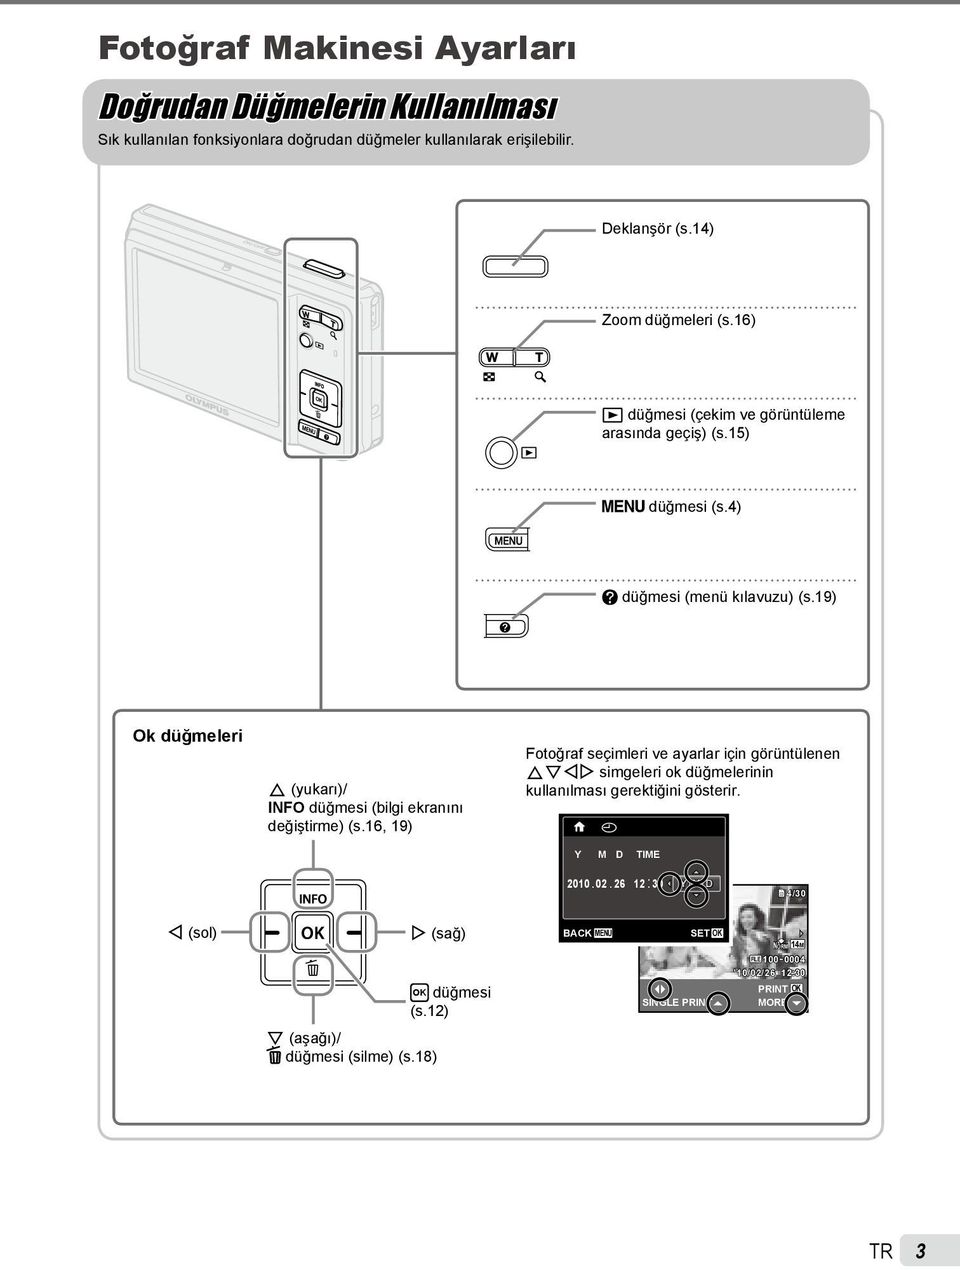 19) Ok düğmeleri F (yukarı)/ INFO düğmesi (bilgi ekranını değiştirme) (s.